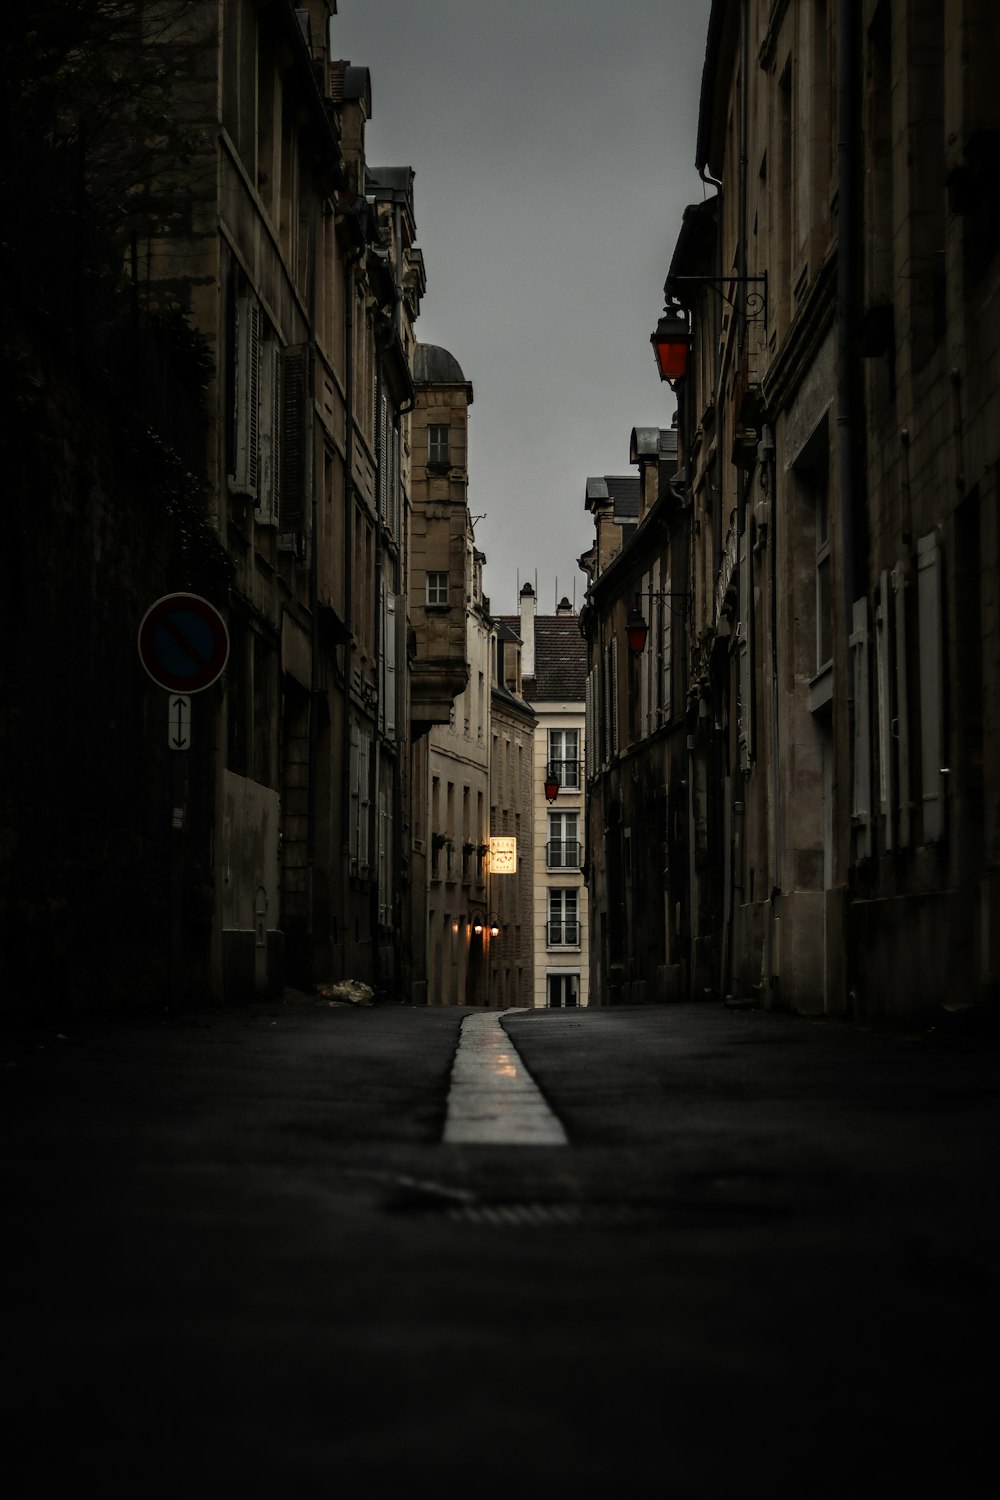 Eine leere Straße mit dunklem Himmel im Hintergrund